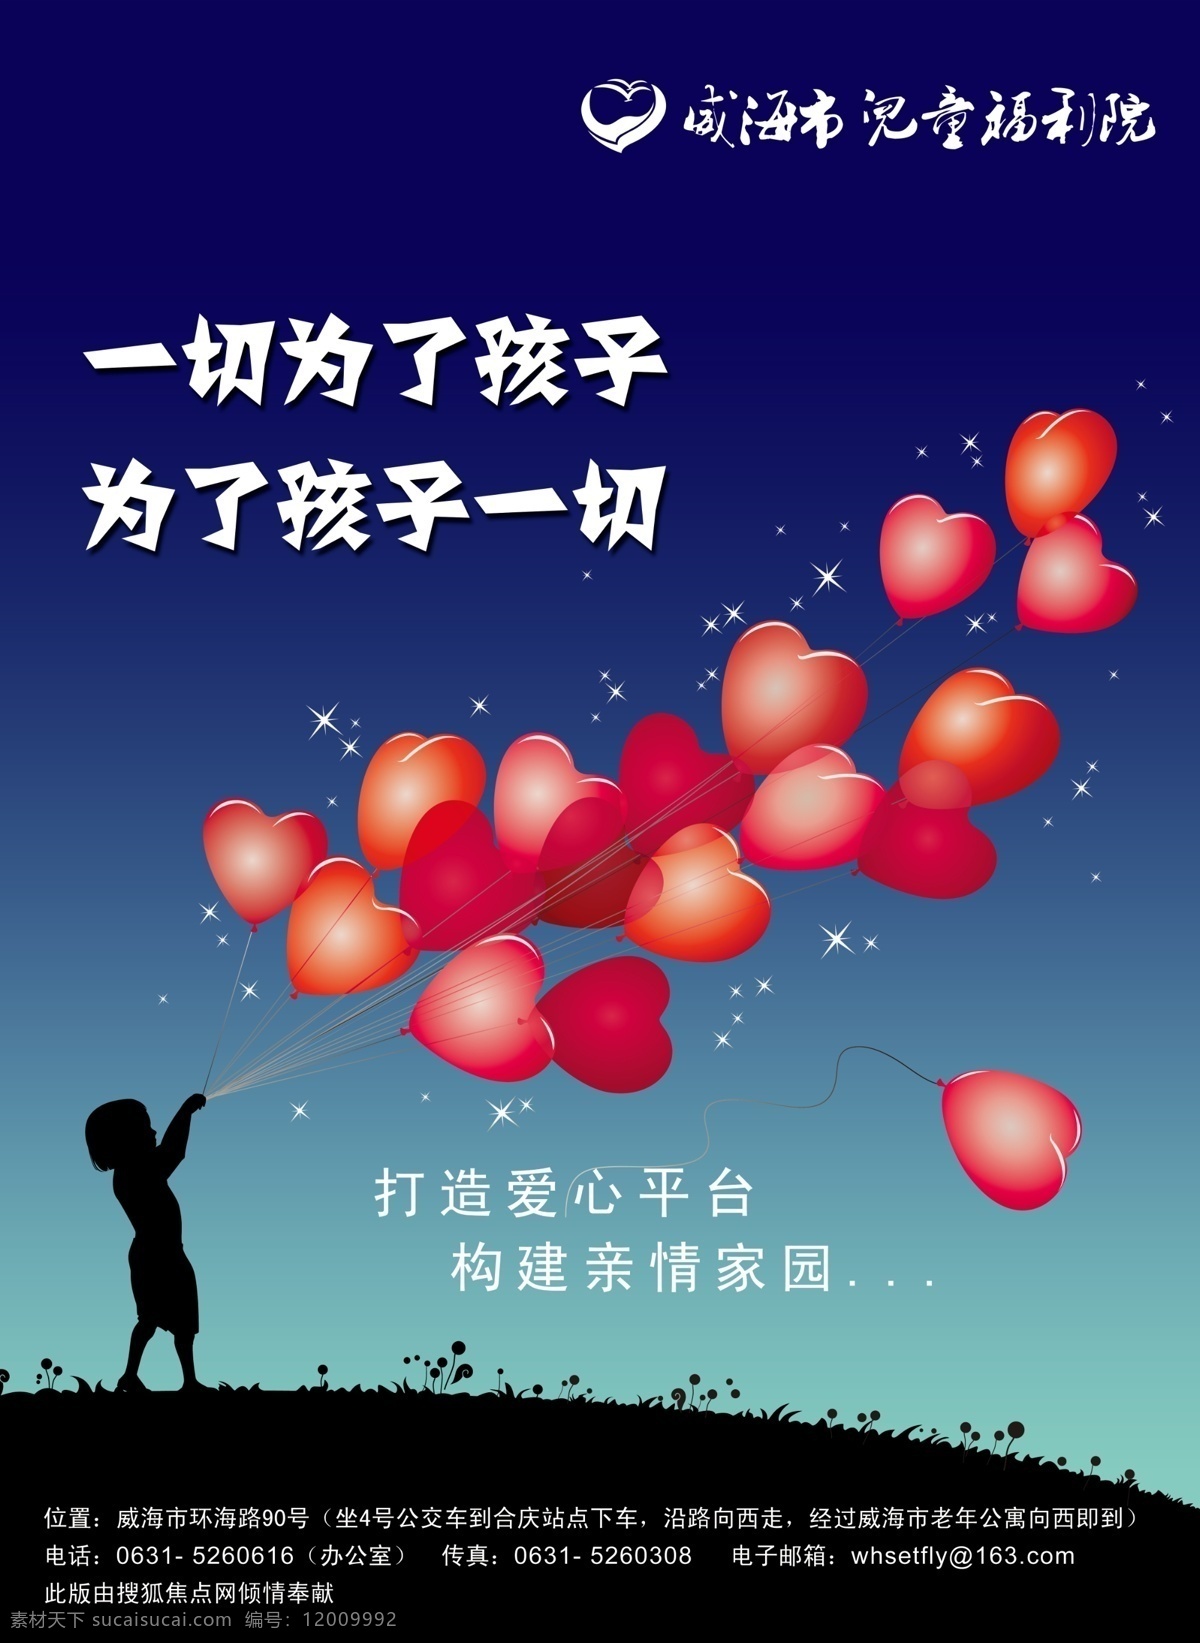 爱心 福利 广告 广告设计模板 孩子 家园 剪影 儿童福利院 海报 印刷品 希望 未来 亲情 打造 气球 心型 夜晚 源文件 其他海报设计